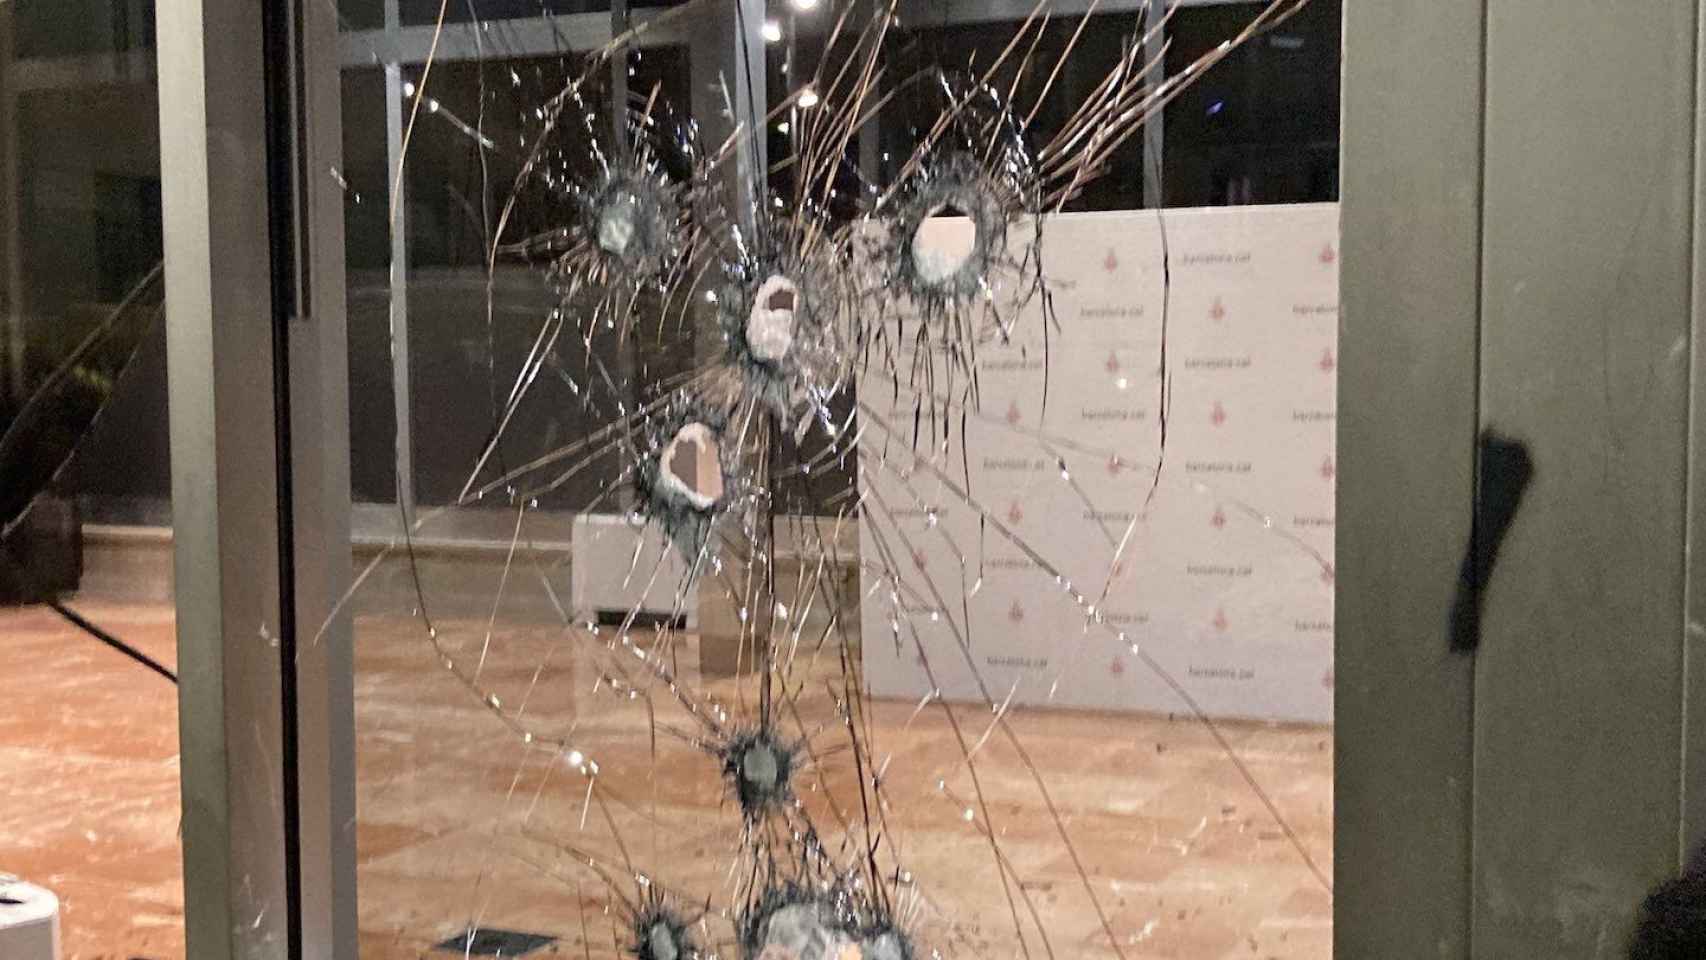 Destrozos causados por okupas en el Ayuntamiento de Barcelona / TWITTER ELENA BURÉS